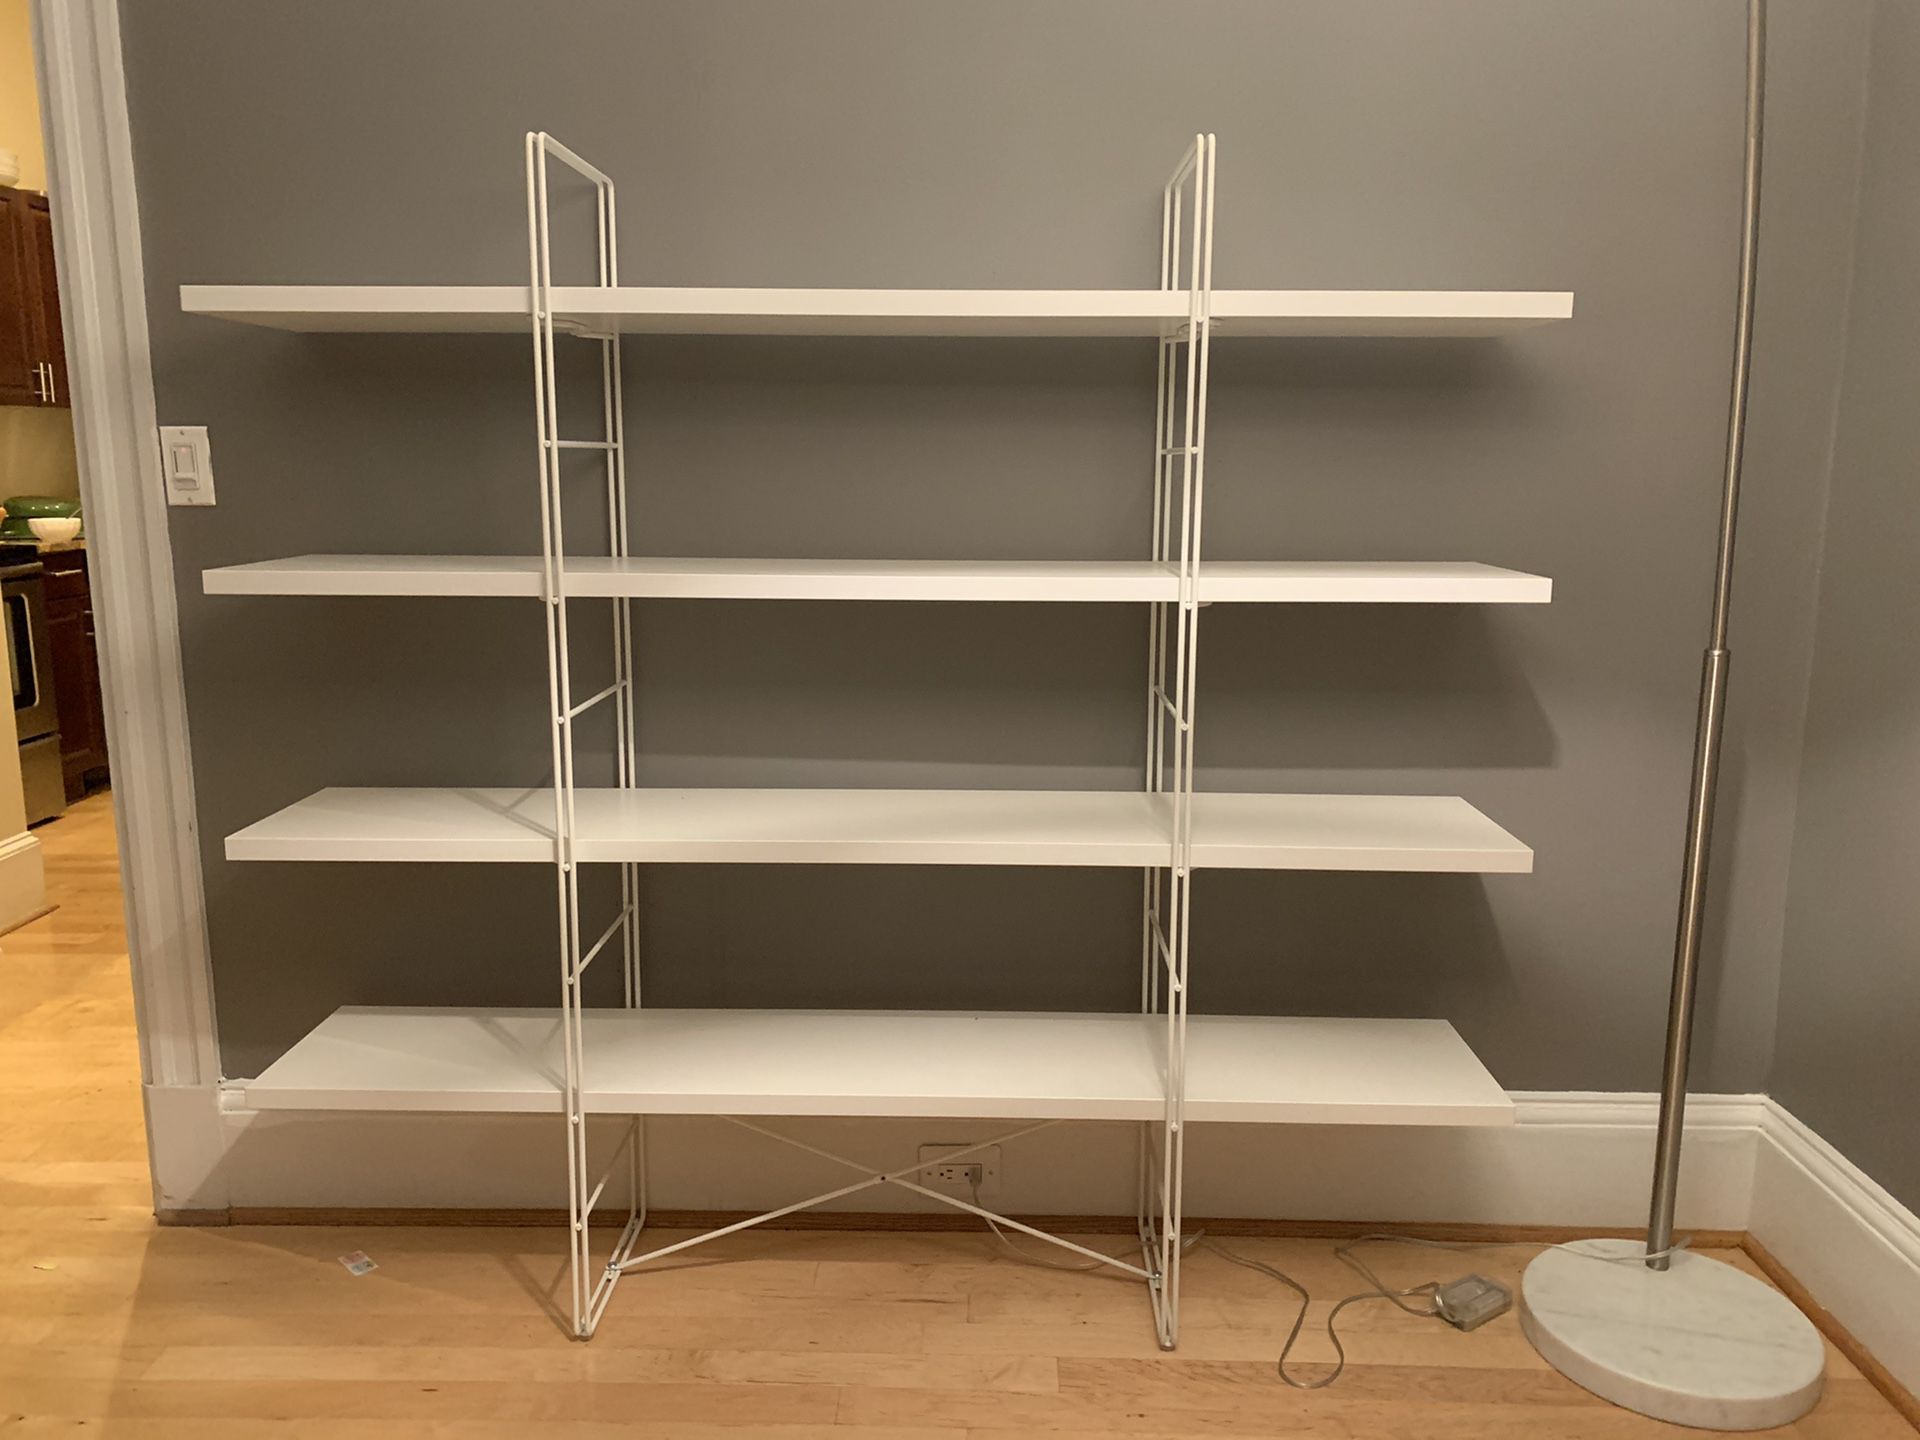 IKEA Bookshelves